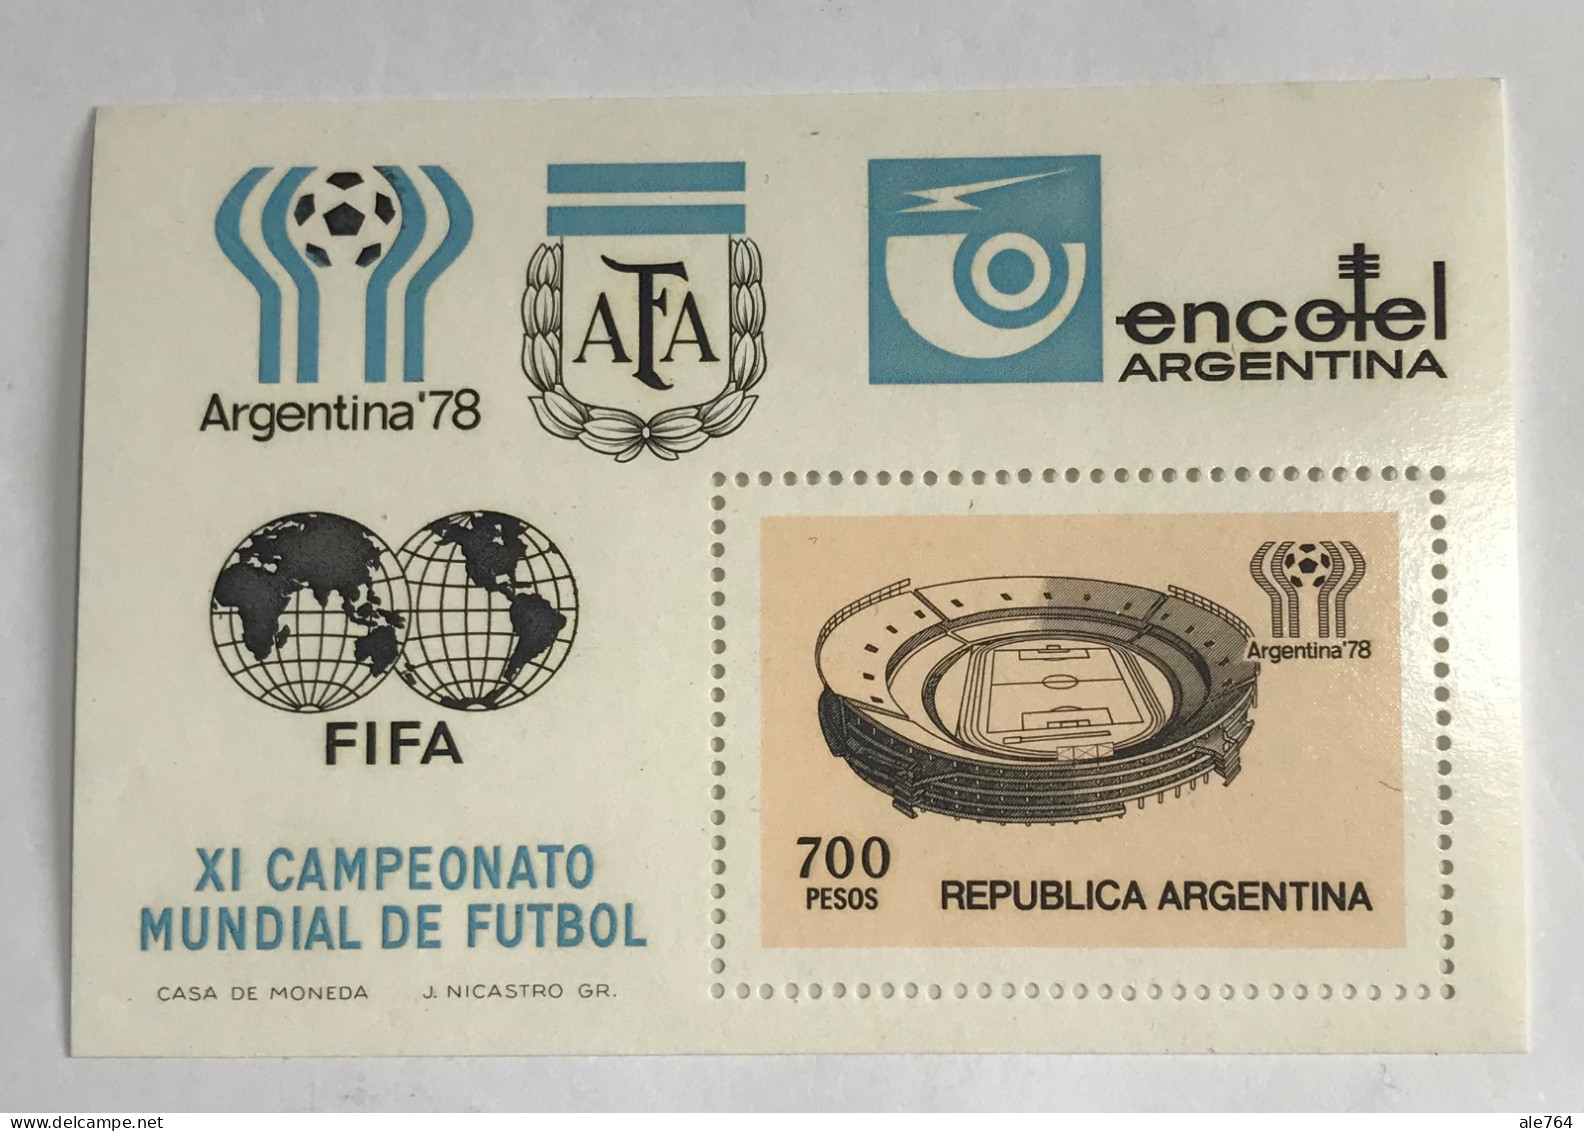 Argentina 1978 Mundial De Futbol, GJ Hb 27, Sc 1192, Mi Hb 18, MNH. - Nuevos